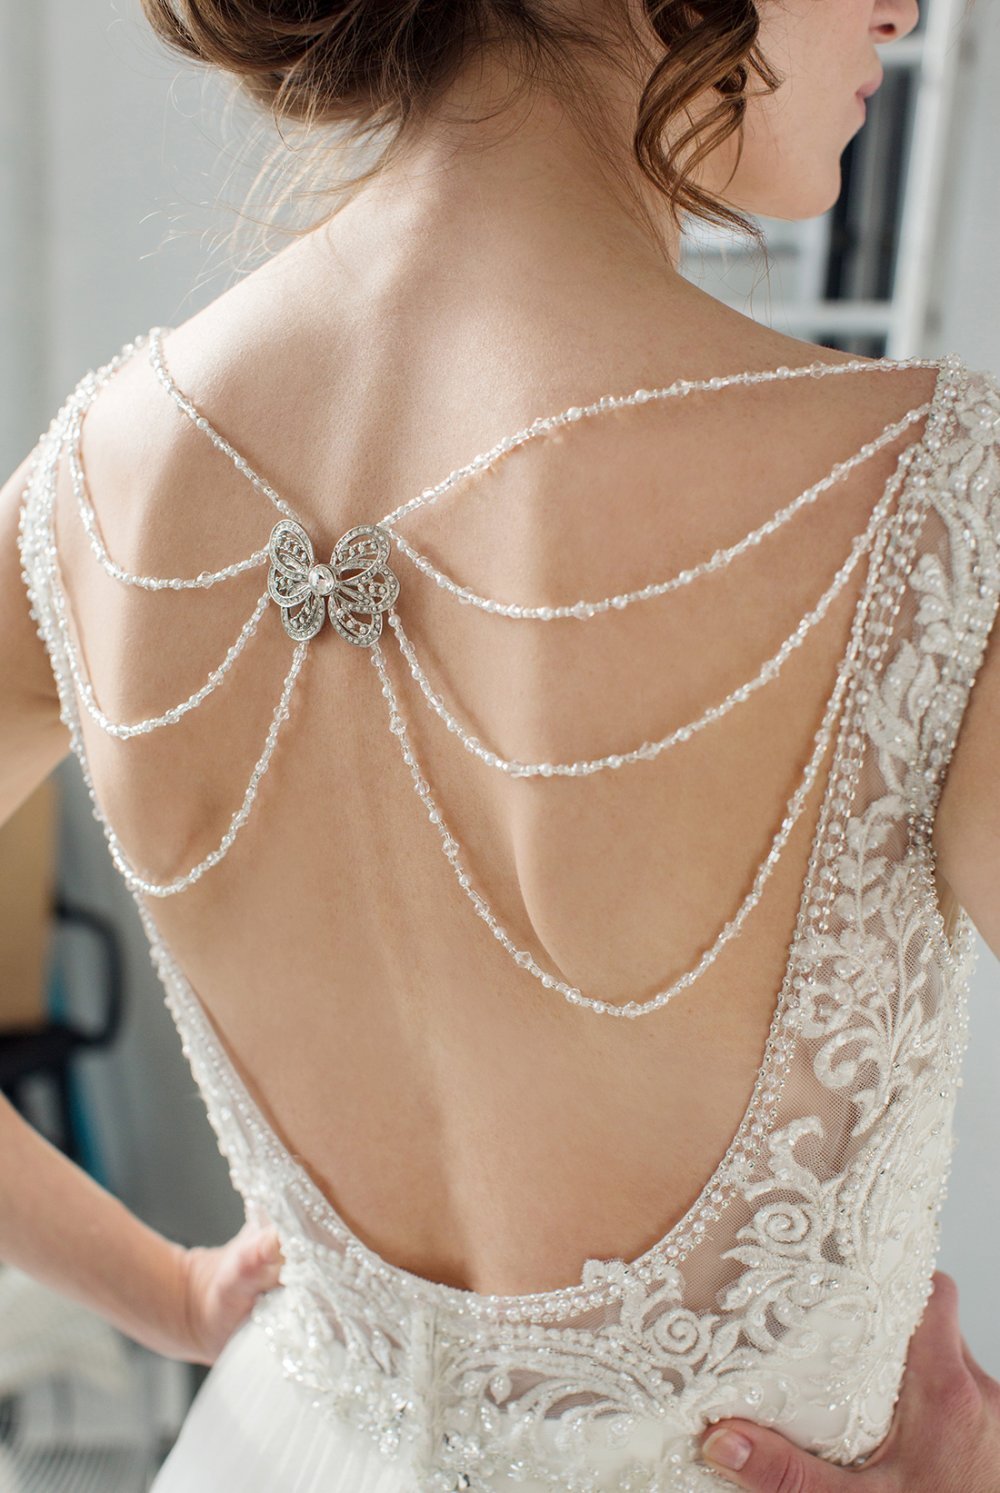 Свадебное платье с красивой спиной, декорированной брошью в виде бабочки